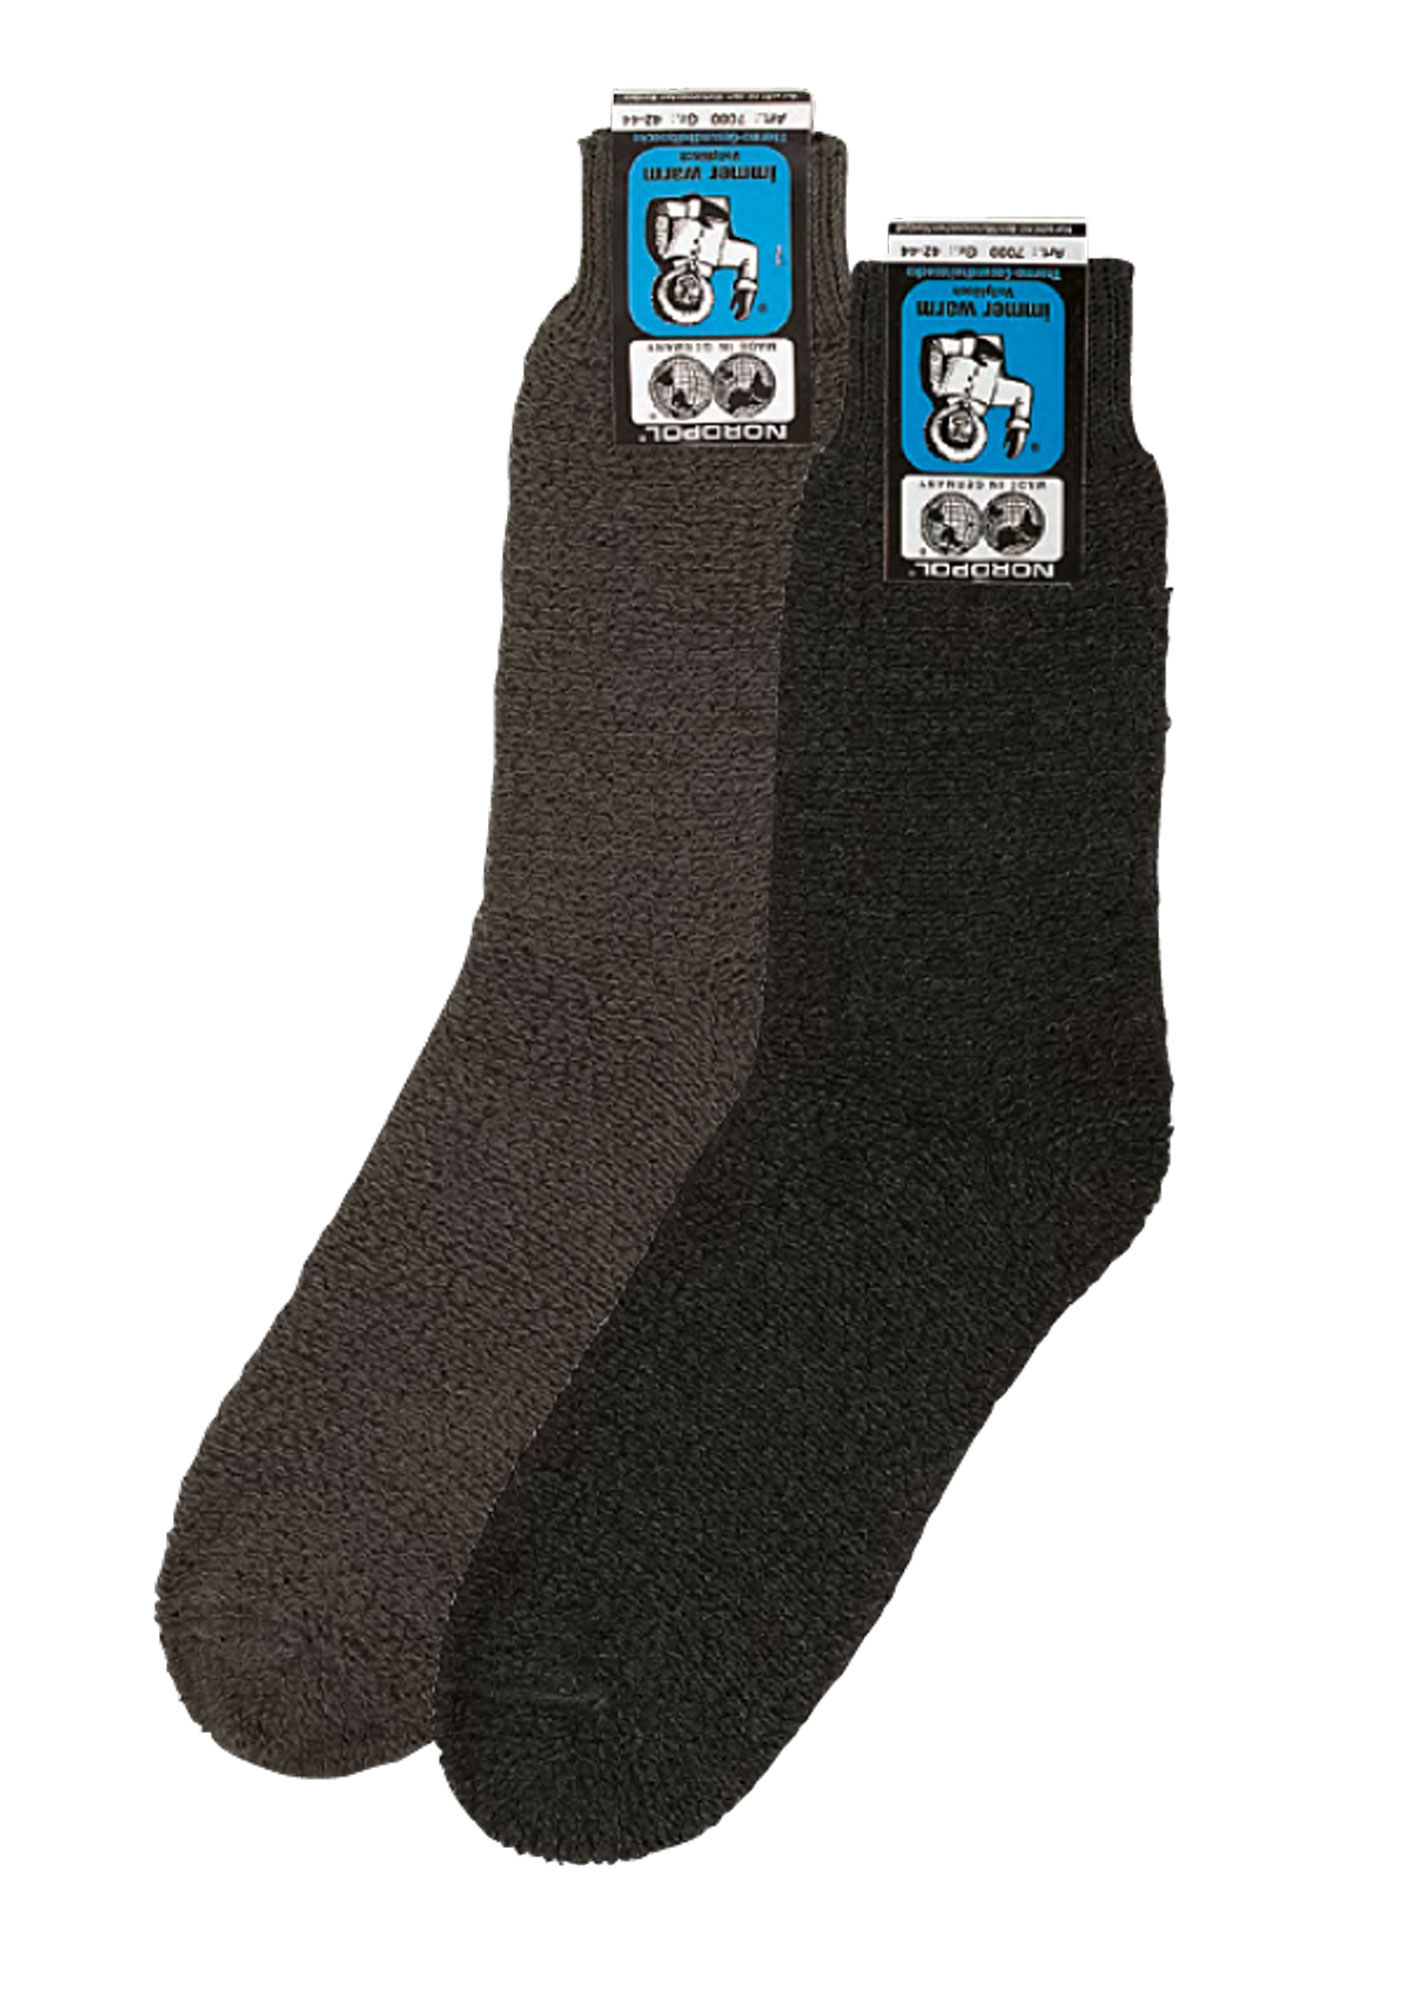 NORDPOL-Socke 70% reine Wolle, kurz